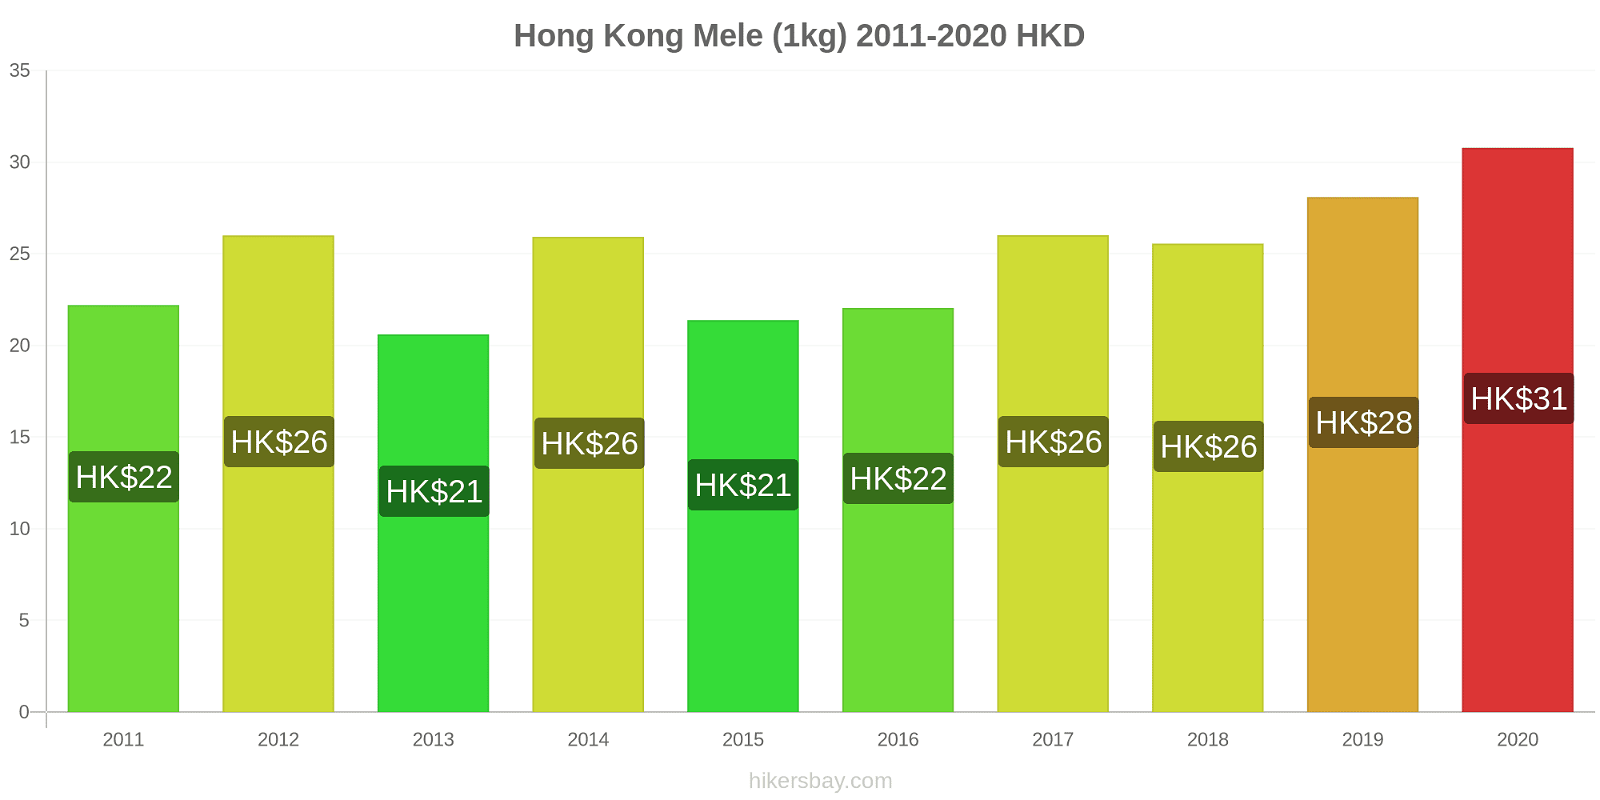 Hong Kong variazioni di prezzo Mele (1kg) hikersbay.com